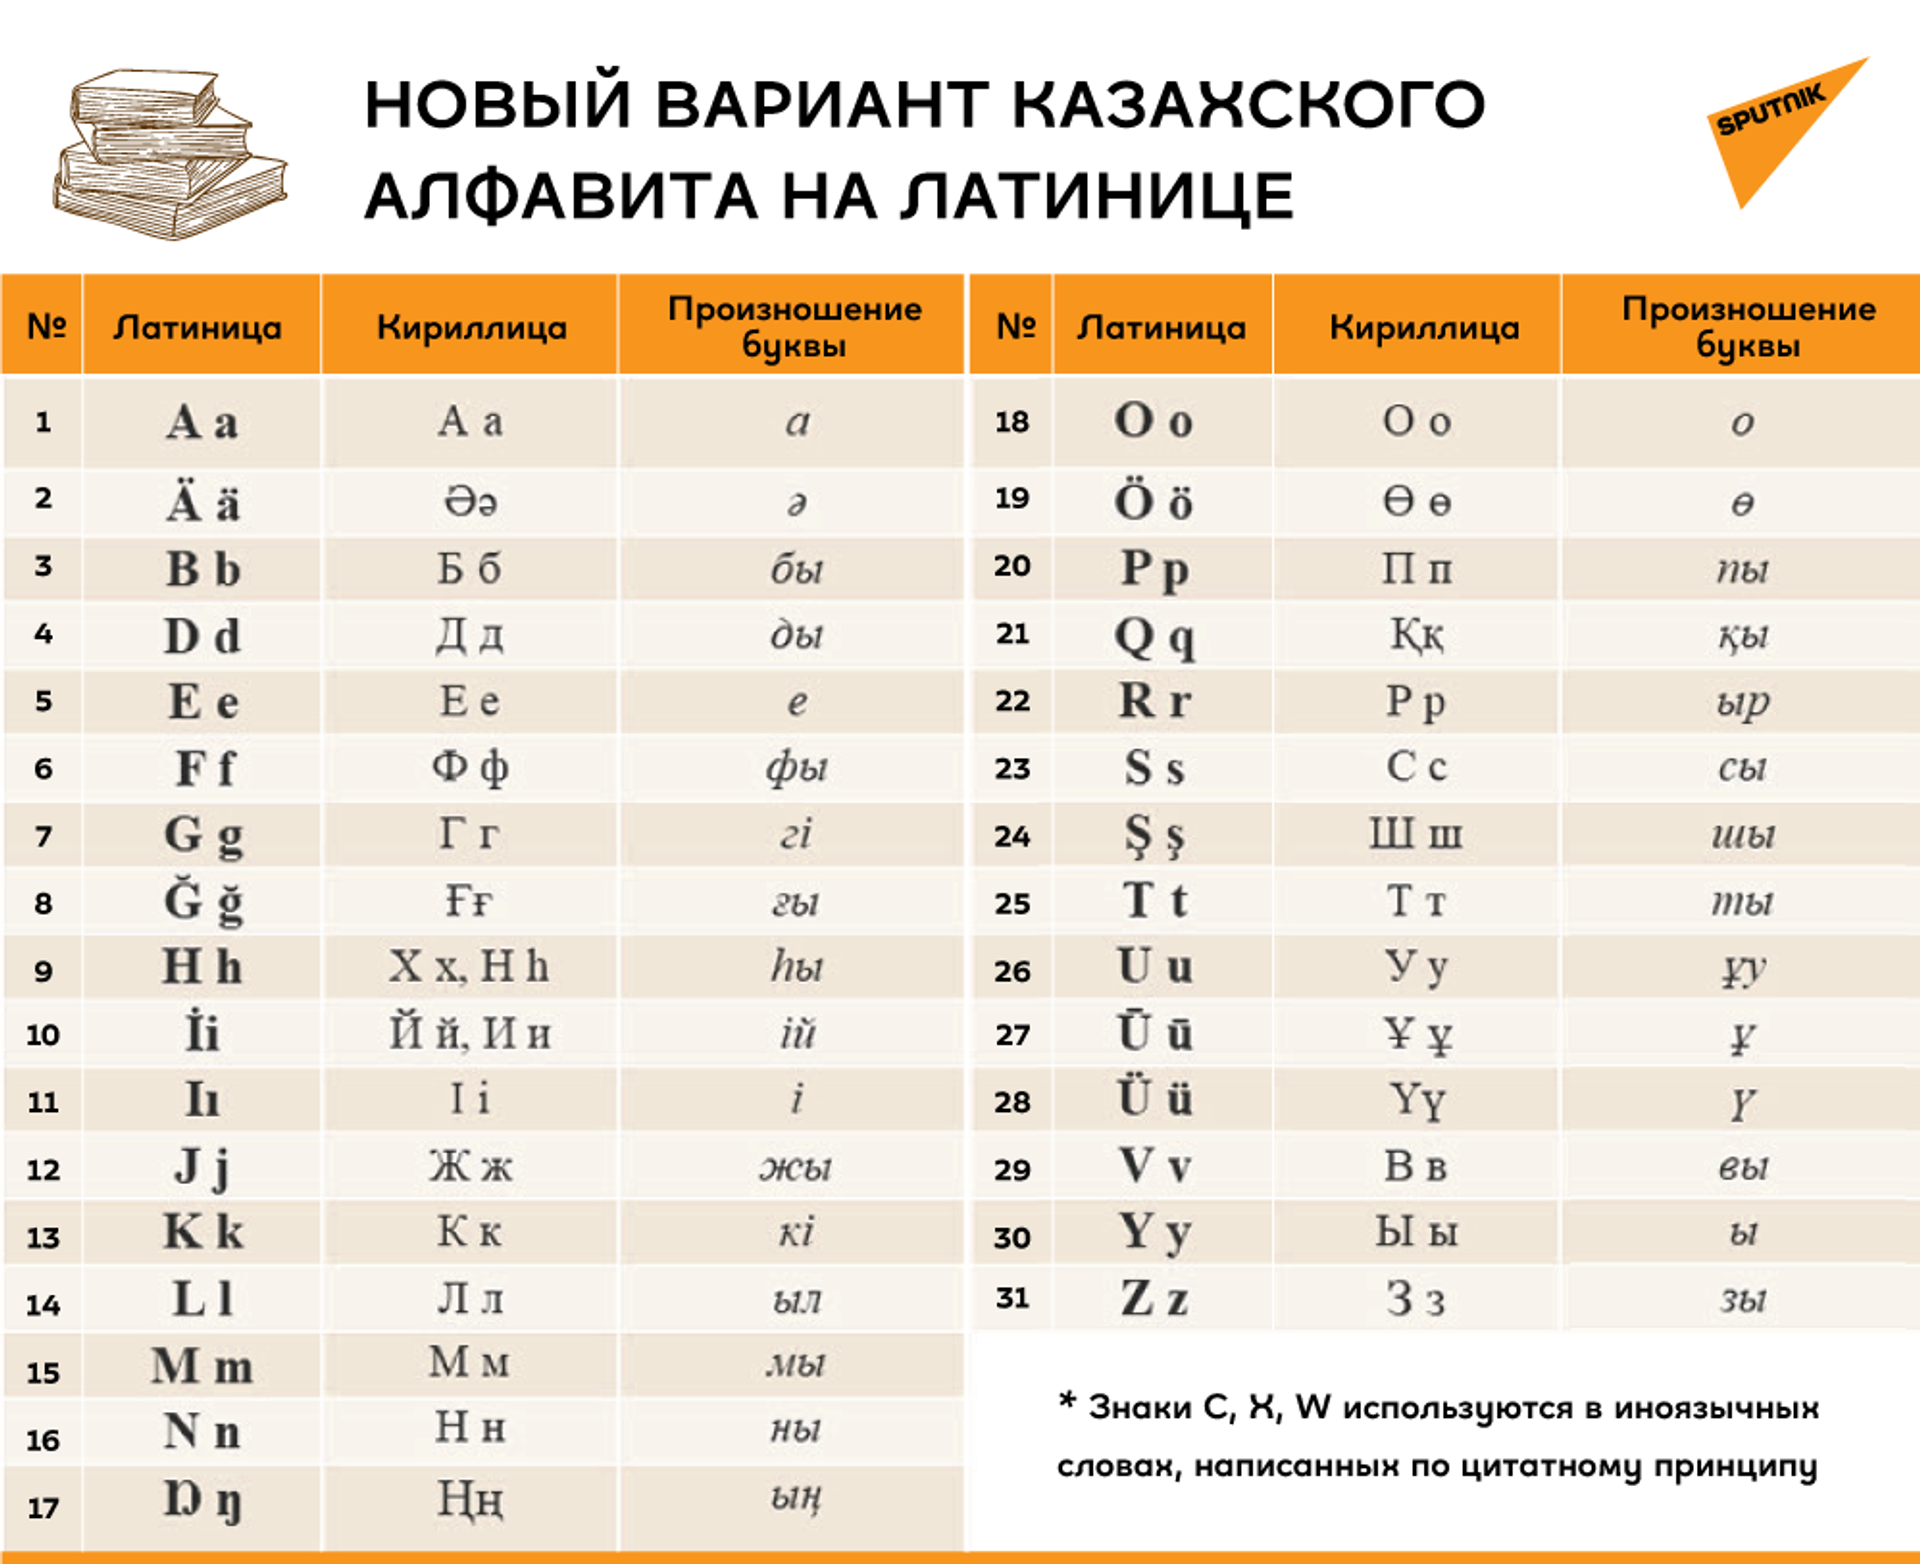 Правила написания фамилий латиницей разработают в 2021 году в Казахстане - Sputnik Казахстан, 1920, 18.02.2021